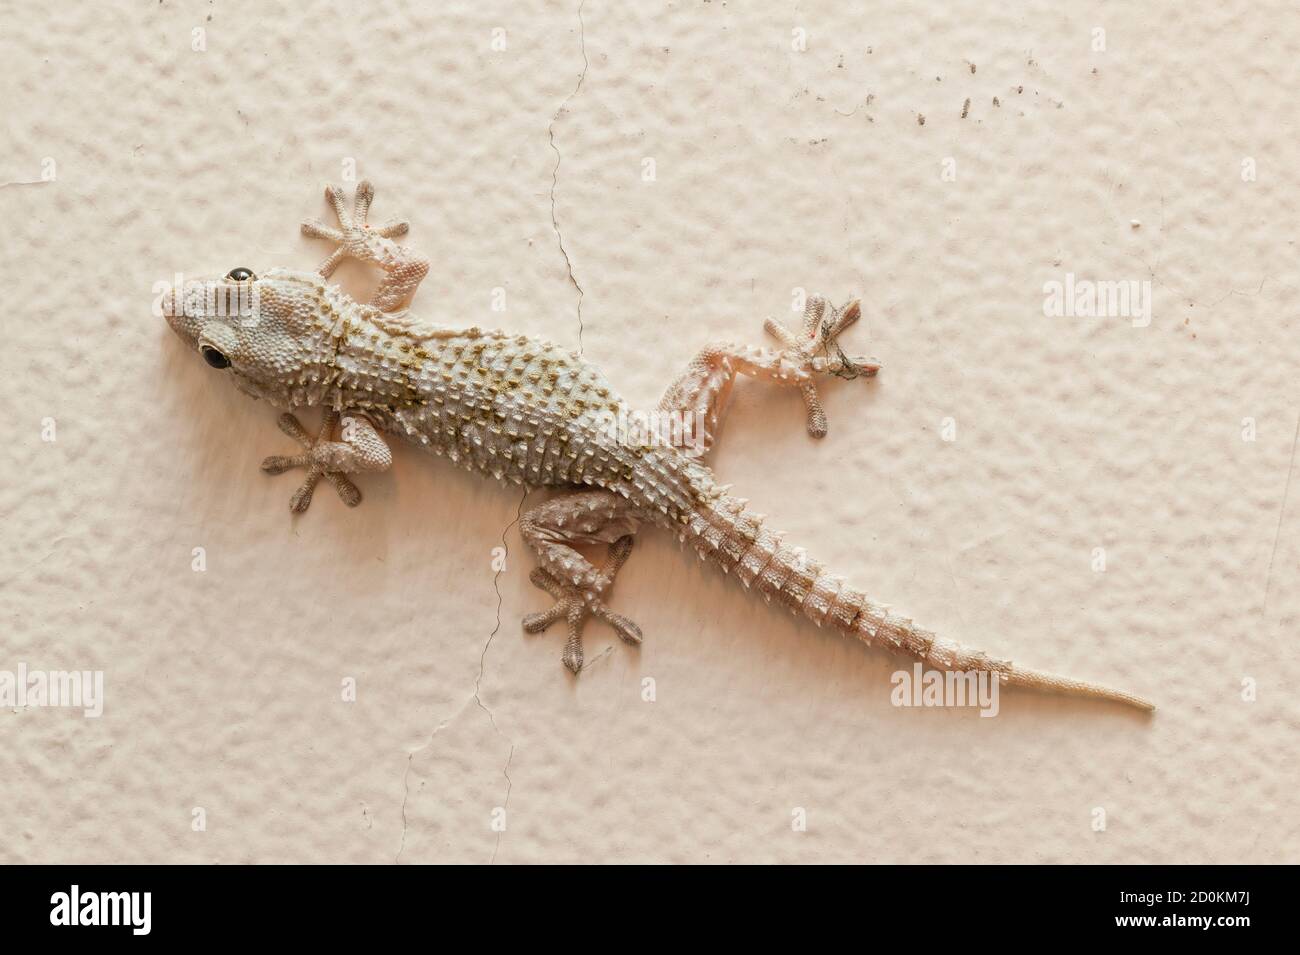 Maison grise Gecko vivant à l'intérieur d'une maison européenne Banque D'Images